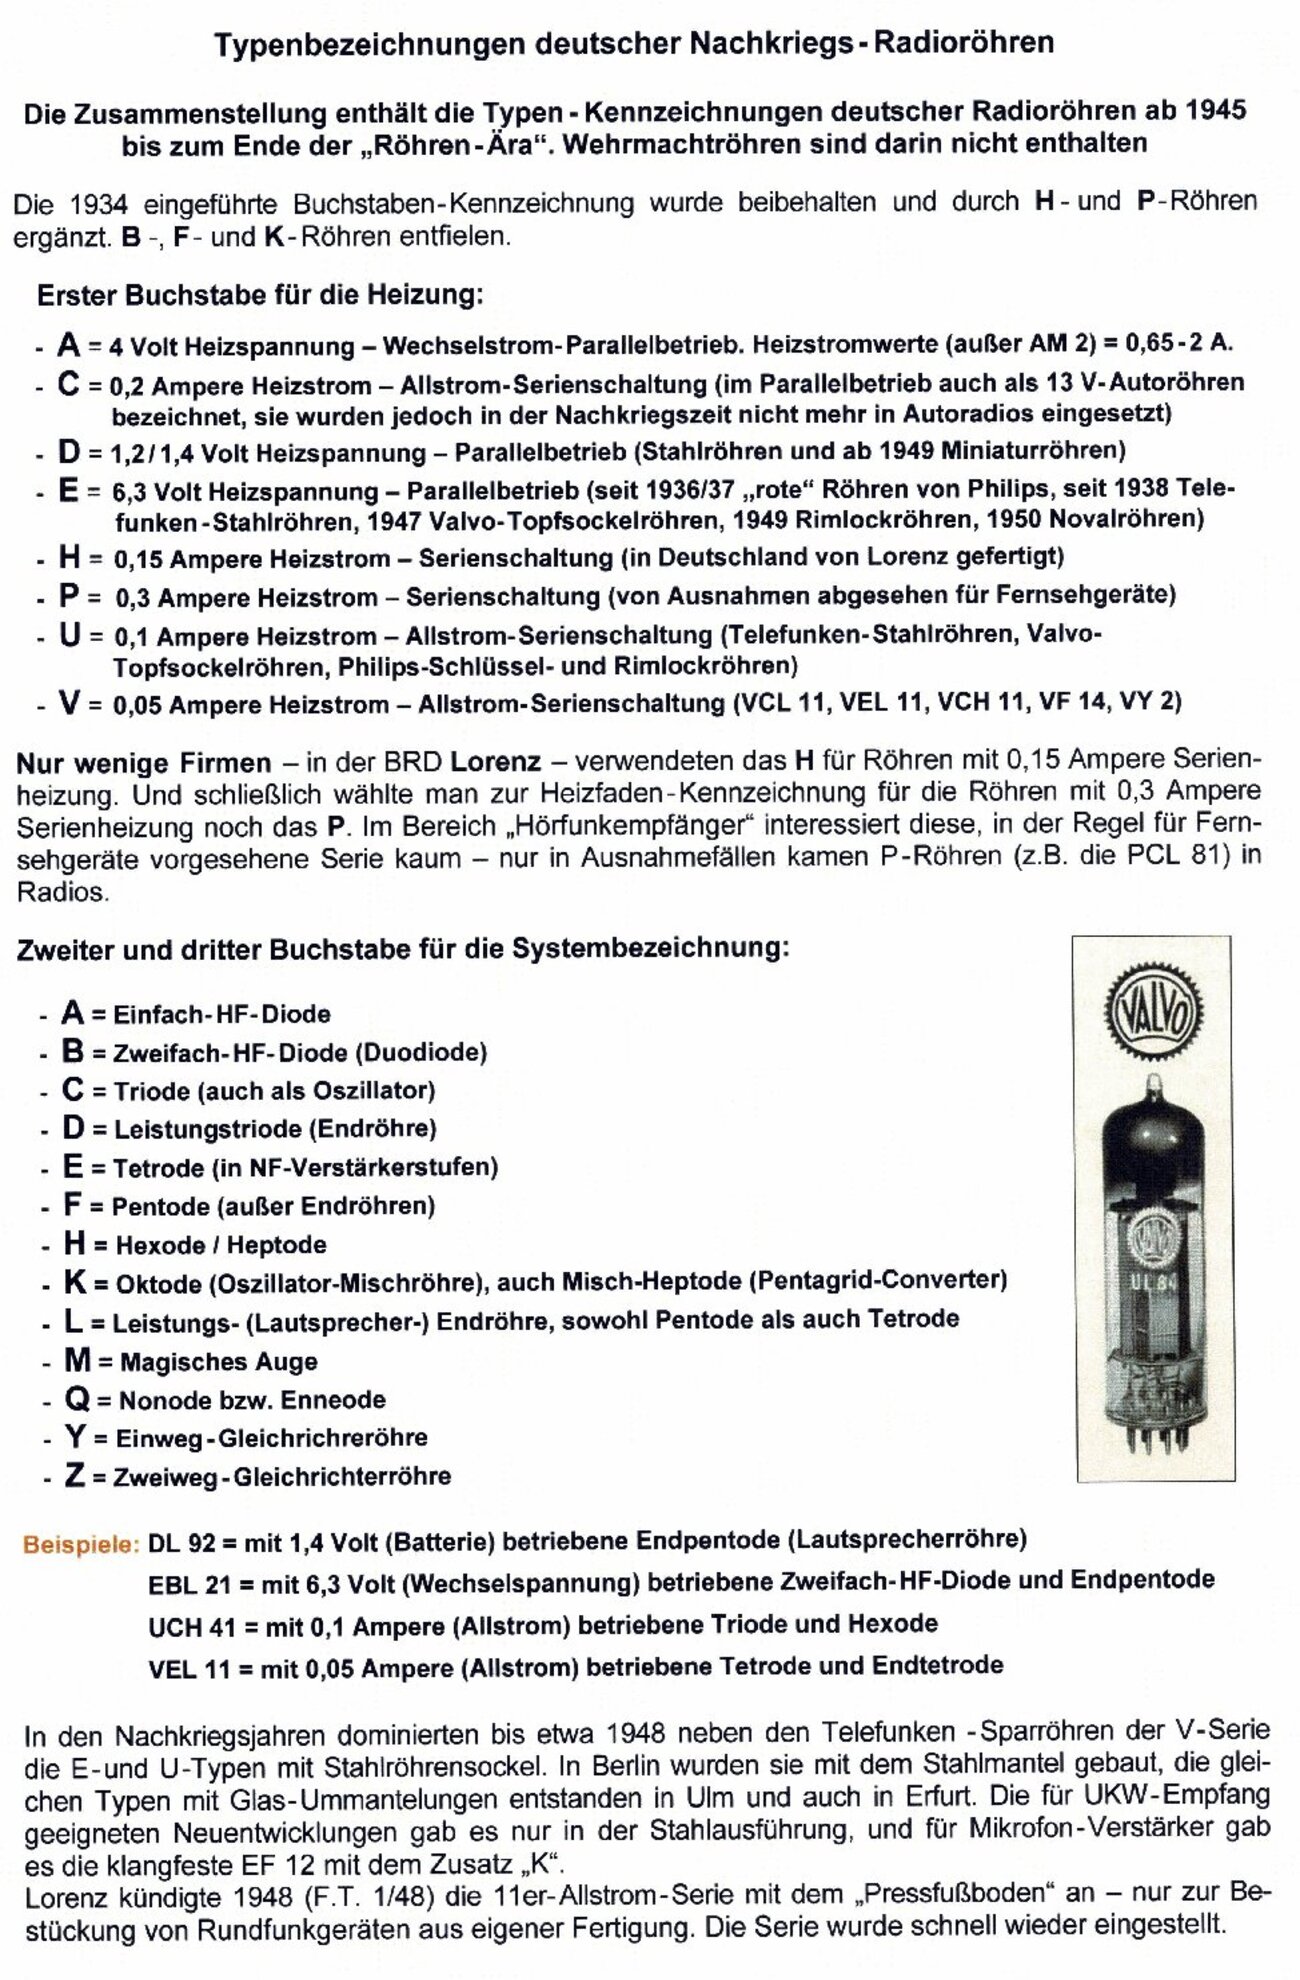 Anhang_B_IV_Deutsche_Radioröhren_Typbezeichnungen_nach_1945_removed_cropped_00009.jpg